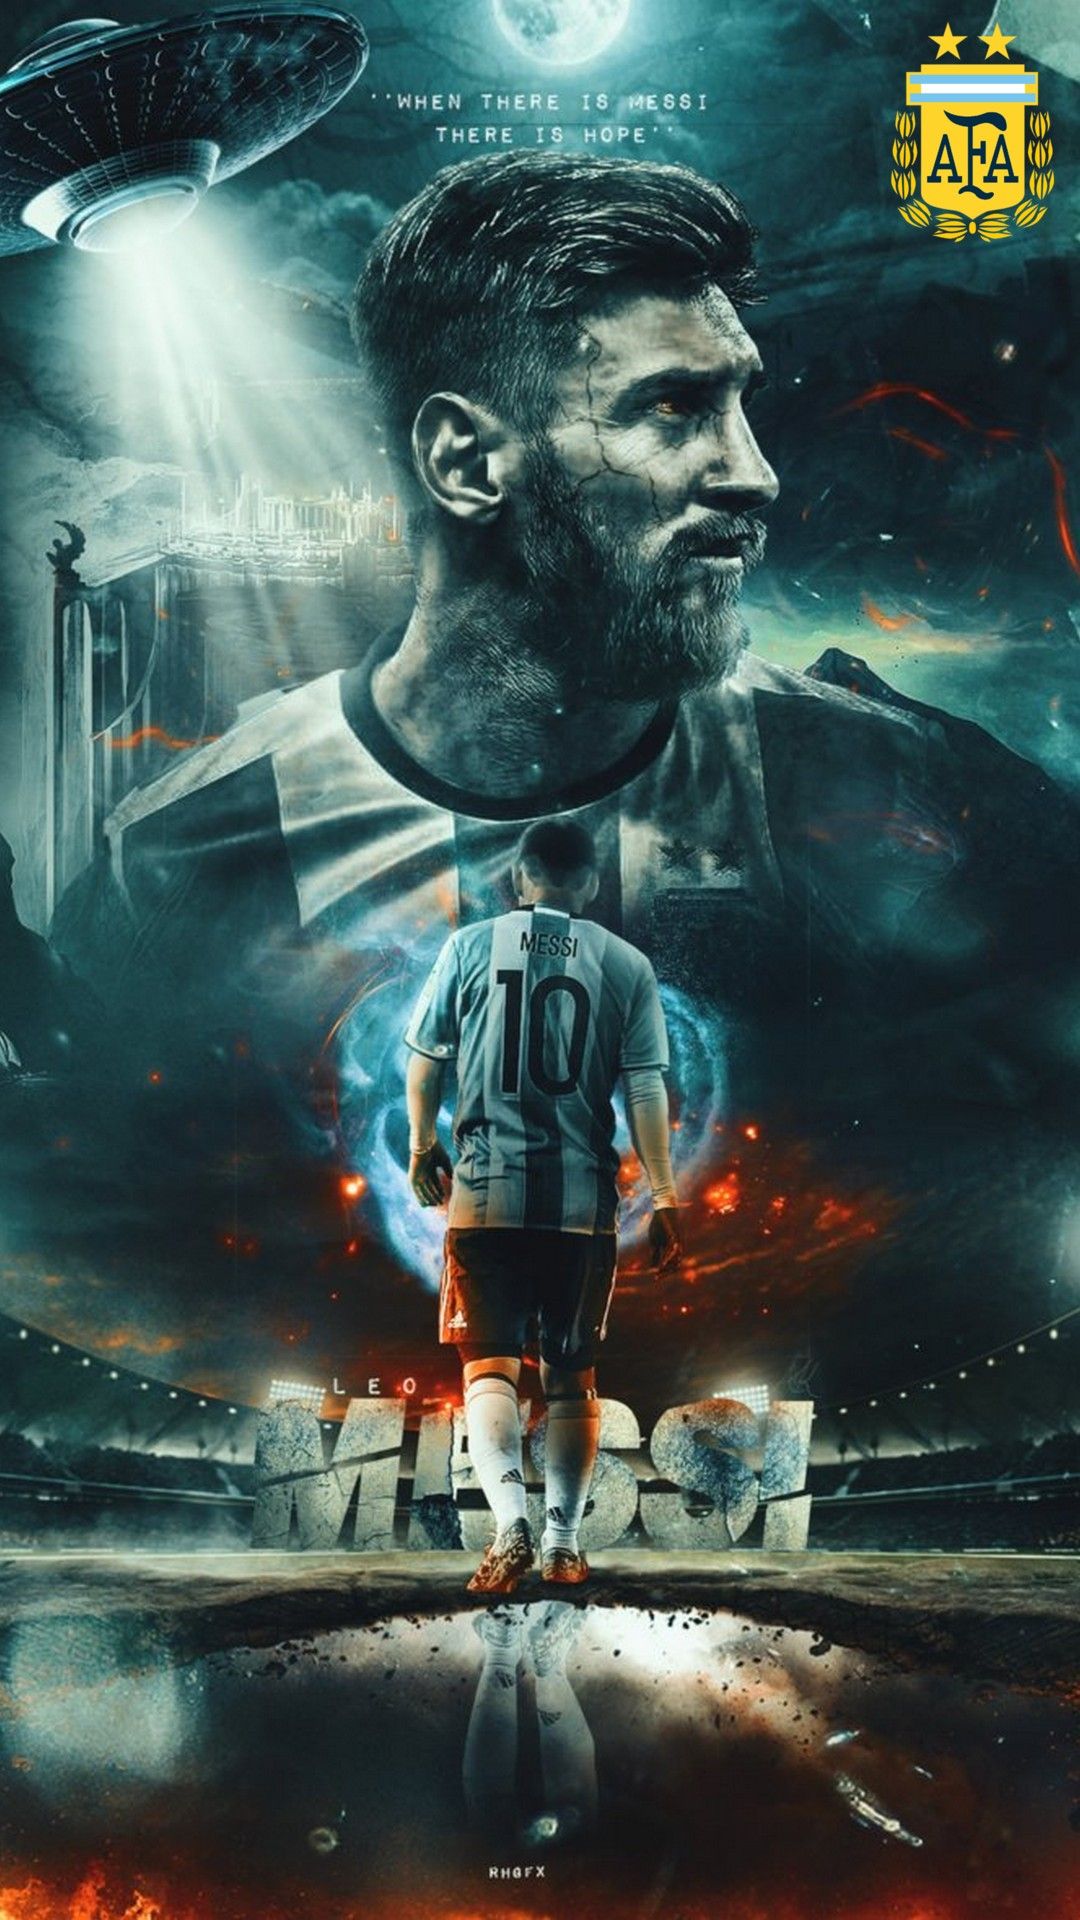 Hình Nền Messi: Bạn đang tìm kiếm hình nền độc đáo cho điện thoại của mình? Bạn không thể bỏ lỡ những hình ảnh của Lionel Messi, từ những khoảnh khắc trên sân cỏ đến những bức ảnh thời trang đầy sáng tạo. Chắc chắn bạn sẽ tìm được một bức hình để tạo nên phong cách riêng cho mình.